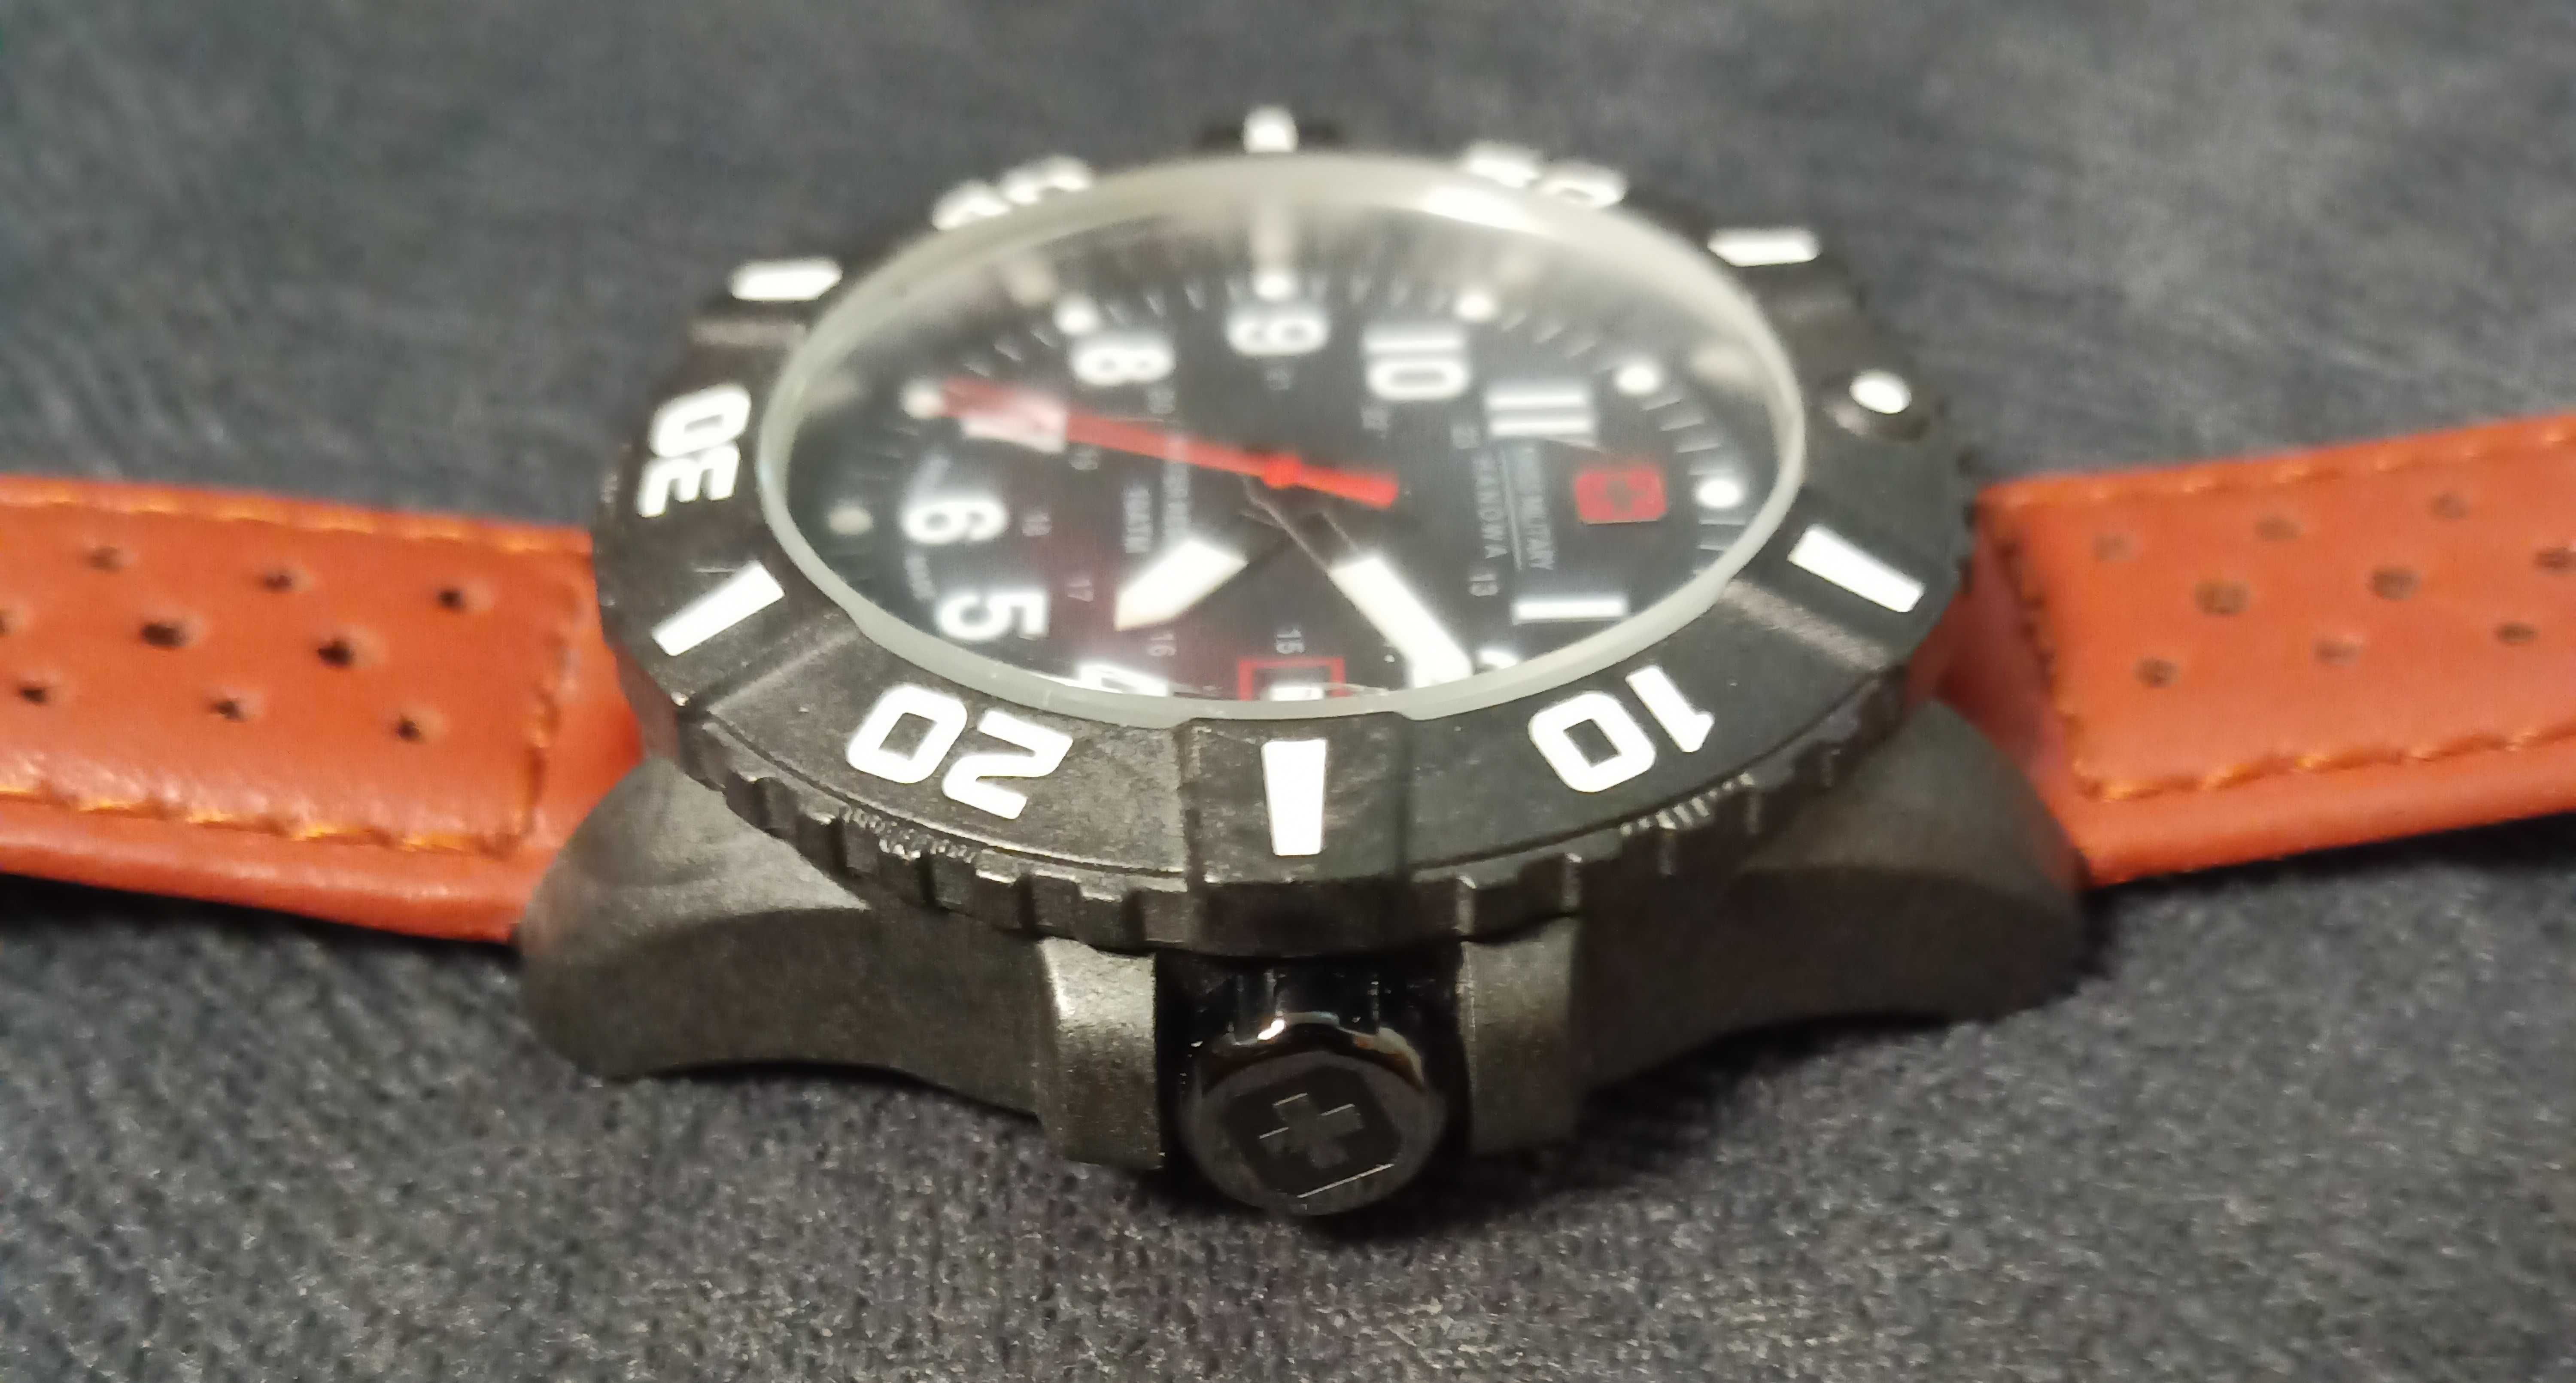 SWISS MILITARY HANOWA Black Carbon z bezelem - szwajcarski zegarek